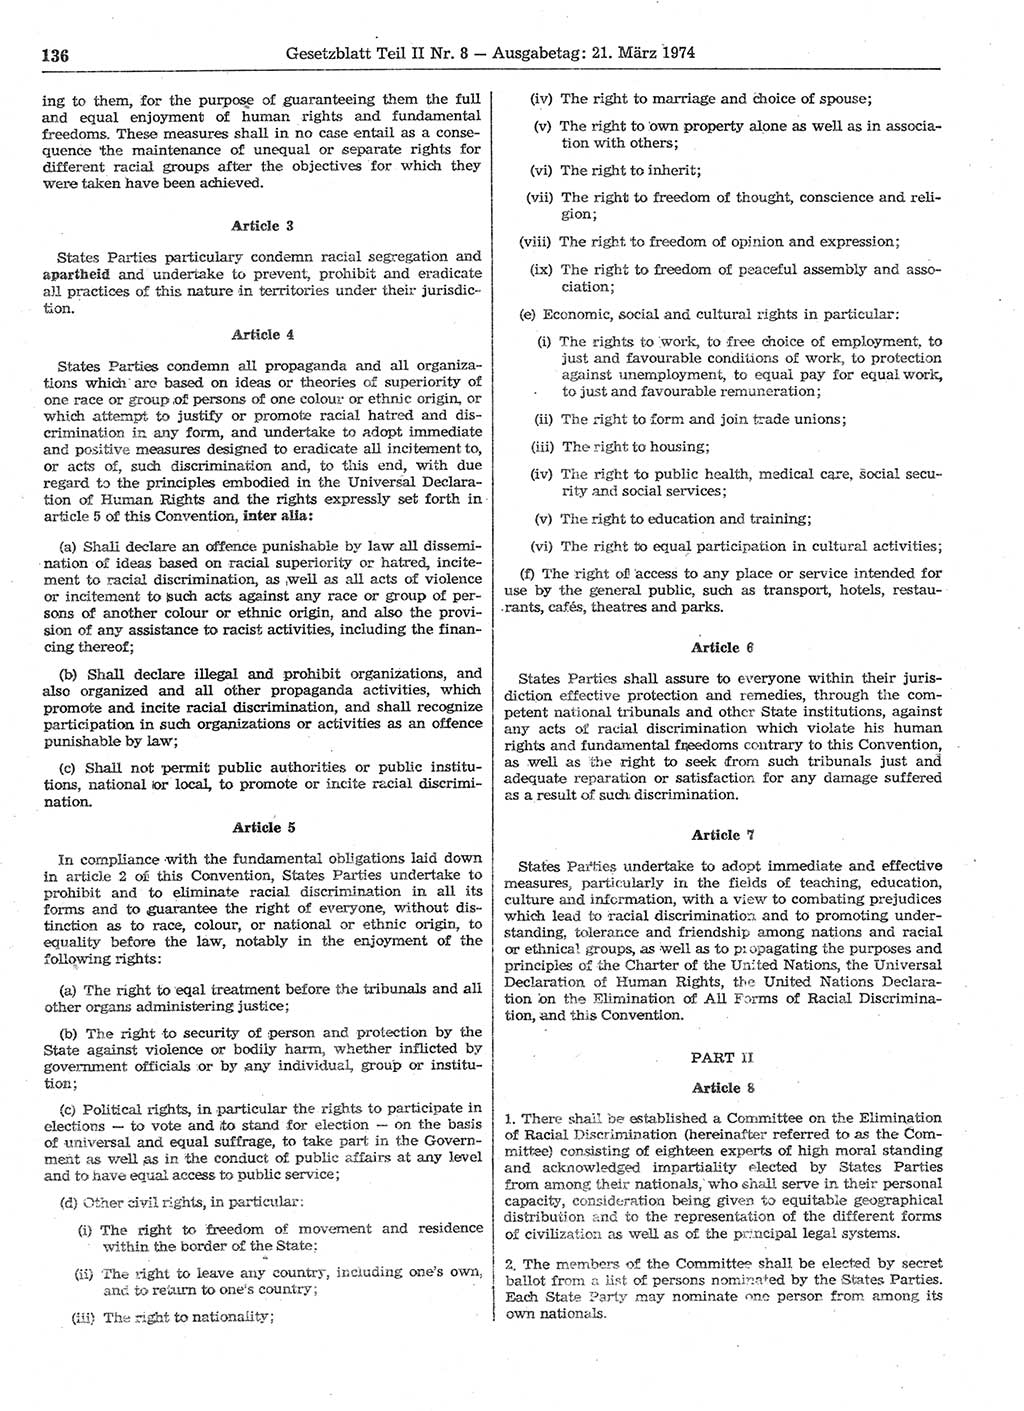 Gesetzblatt (GBl.) der Deutschen Demokratischen Republik (DDR) Teil ⅠⅠ 1974, Seite 136 (GBl. DDR ⅠⅠ 1974, S. 136)